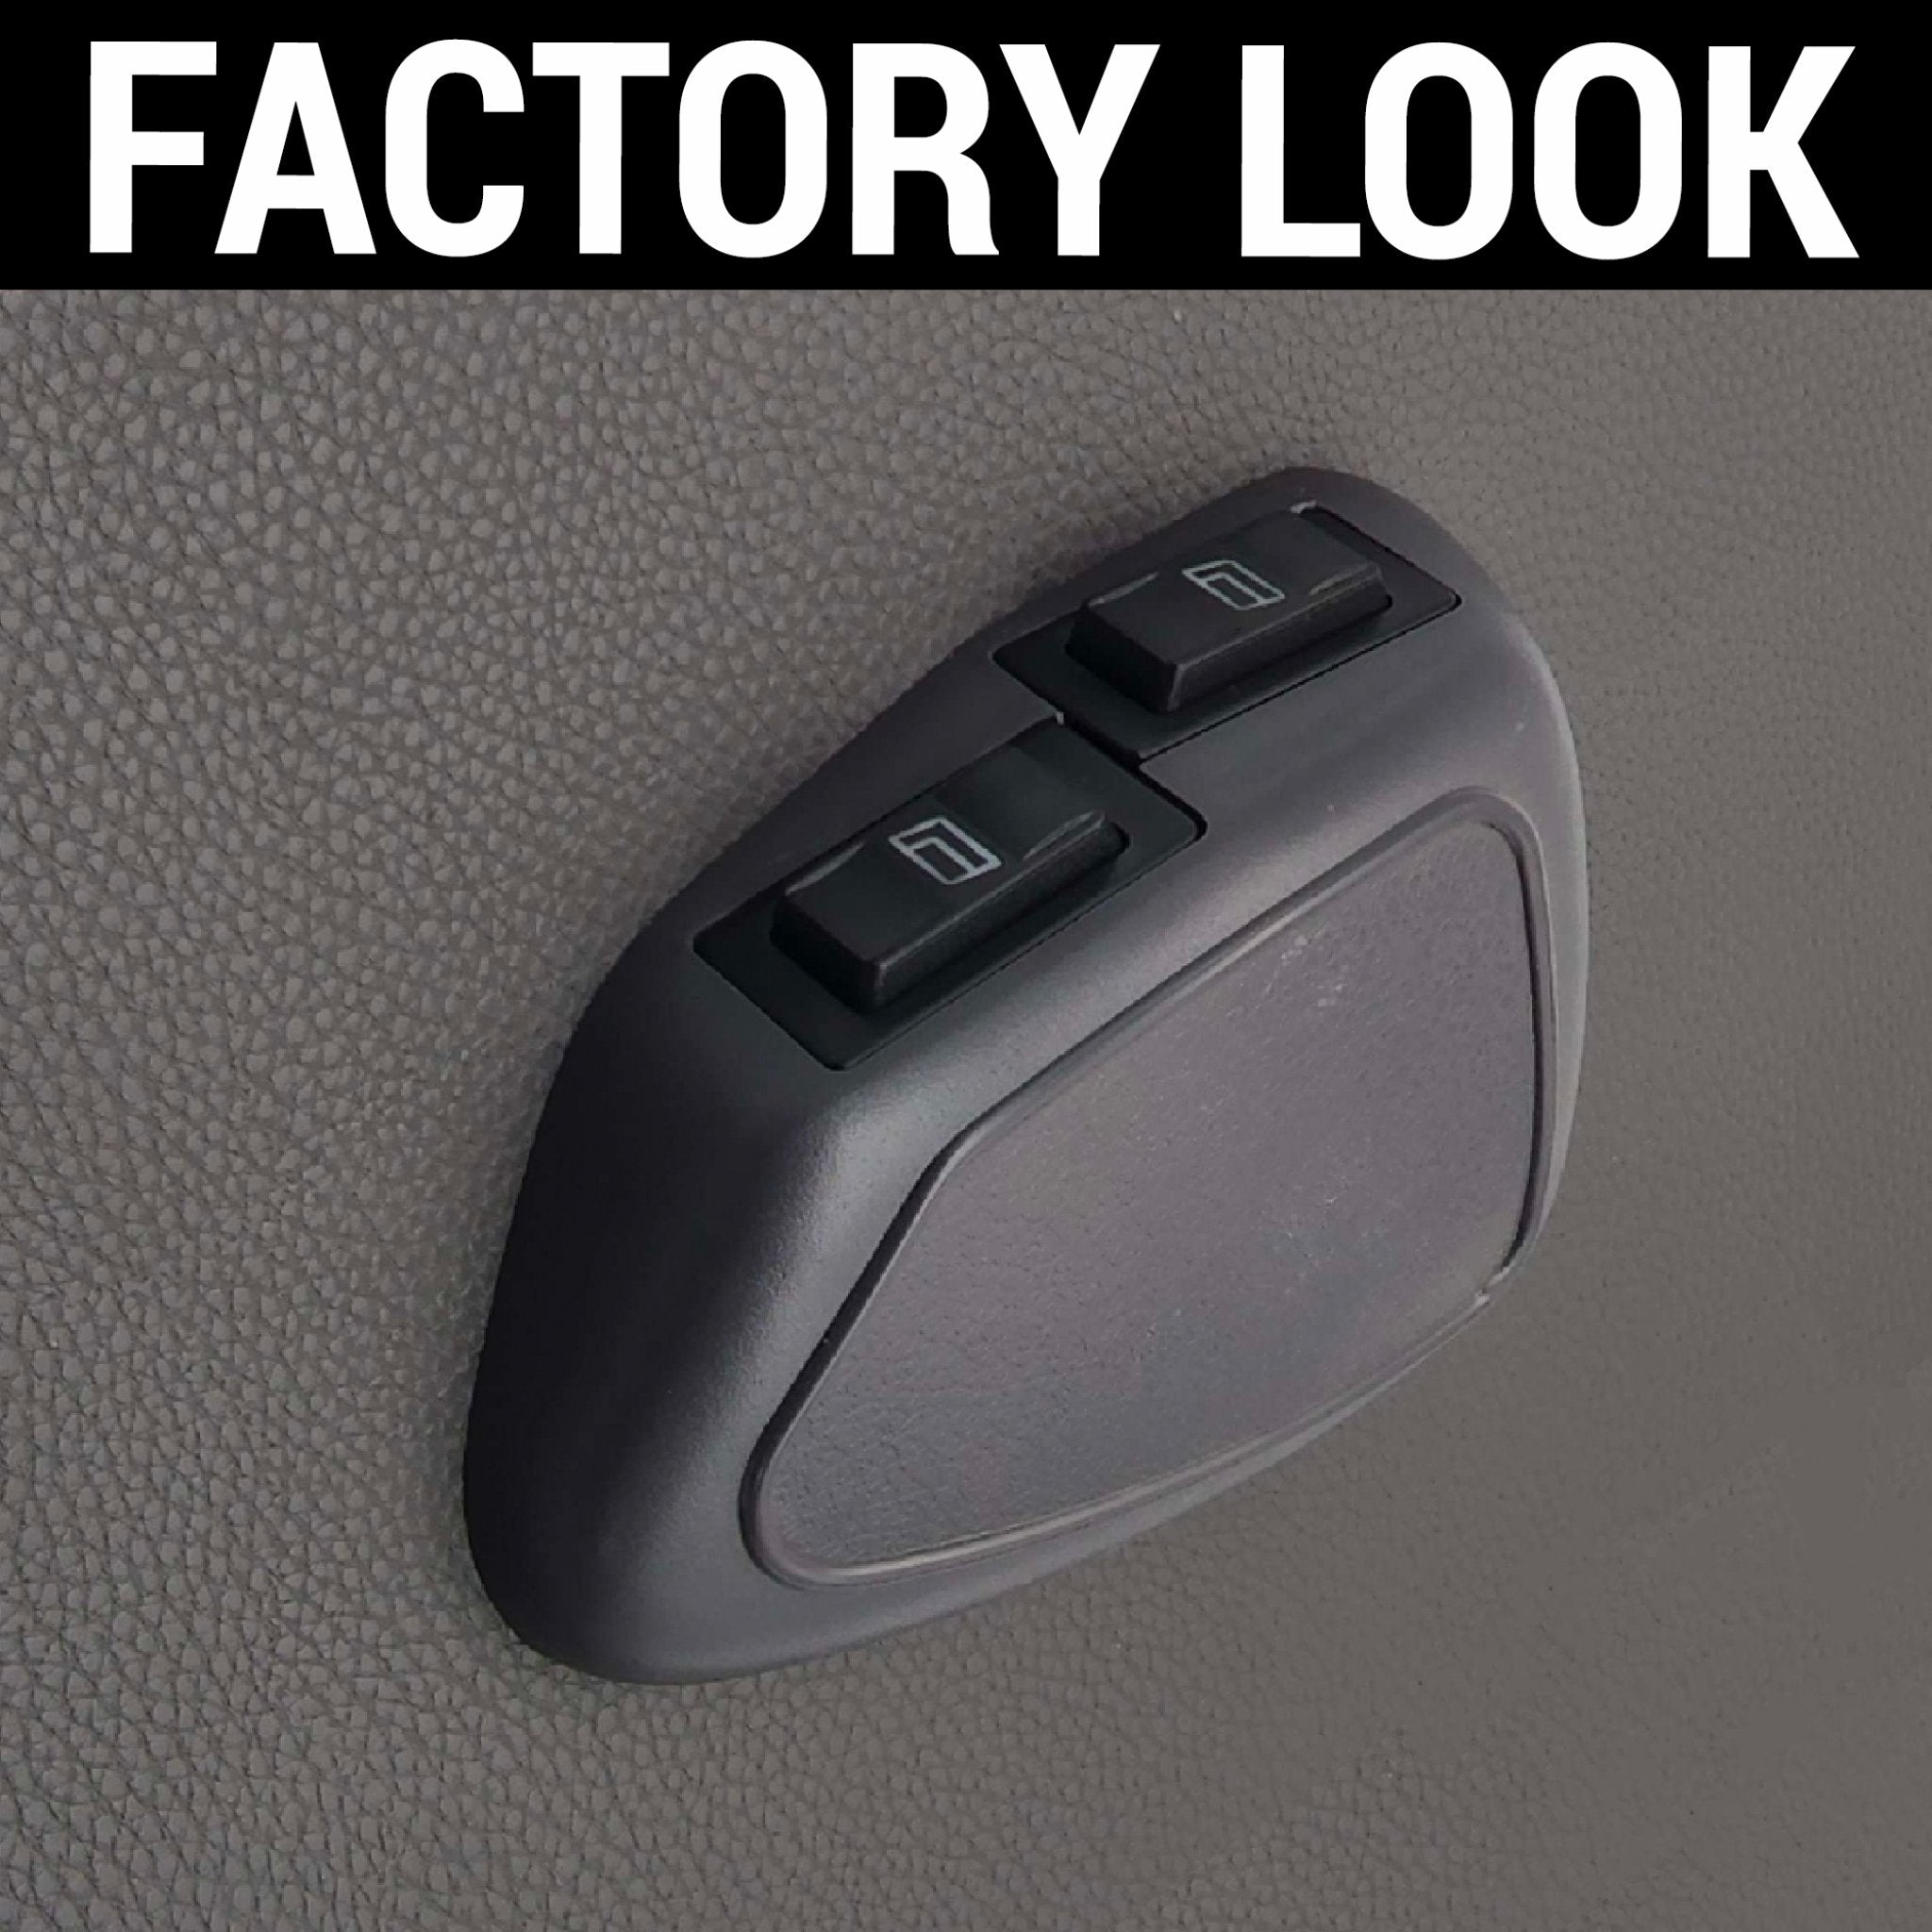 Doble 2 interruptores basculantes, caja negra, Panel biselado, cerraduras de ventanillas eléctricas para puerta del conductor del coche